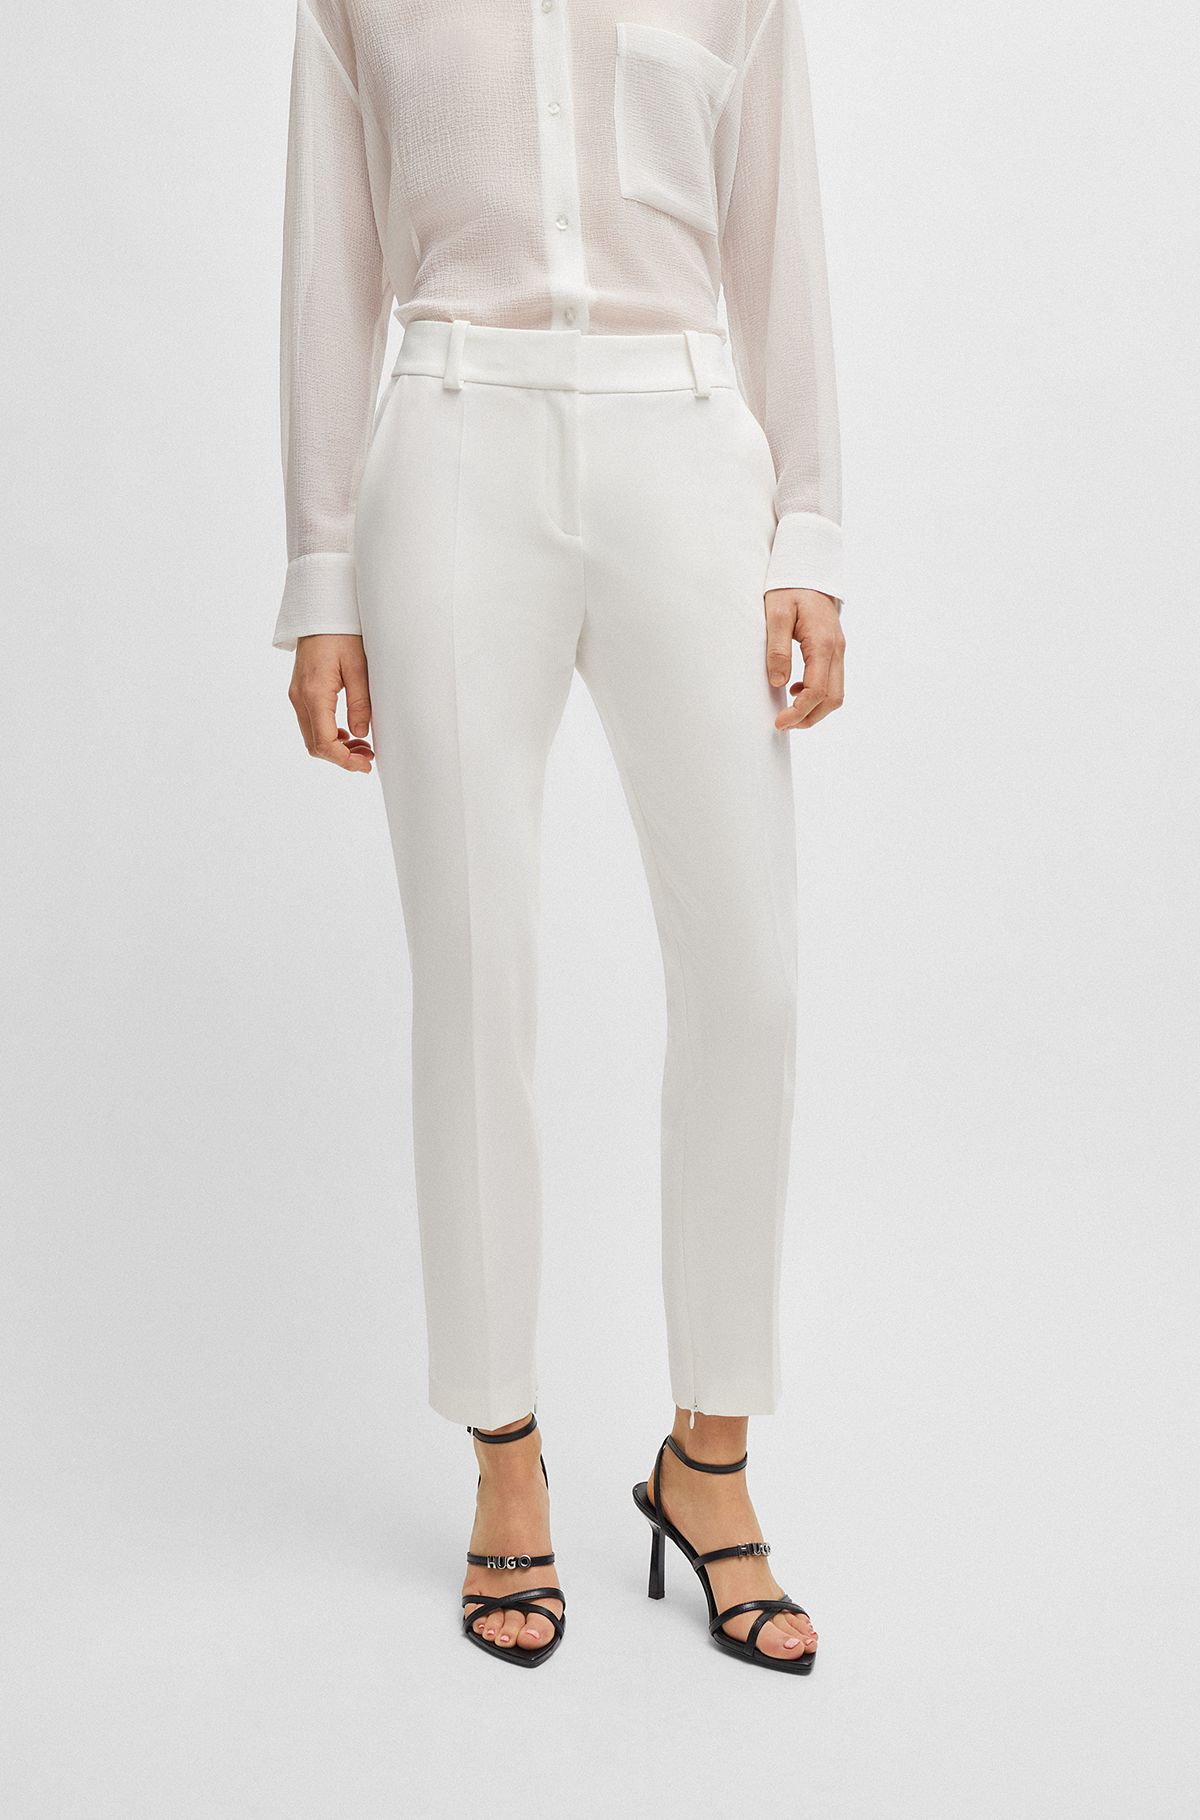 Buy White Trousers & Pants for Women by Encrustd Online